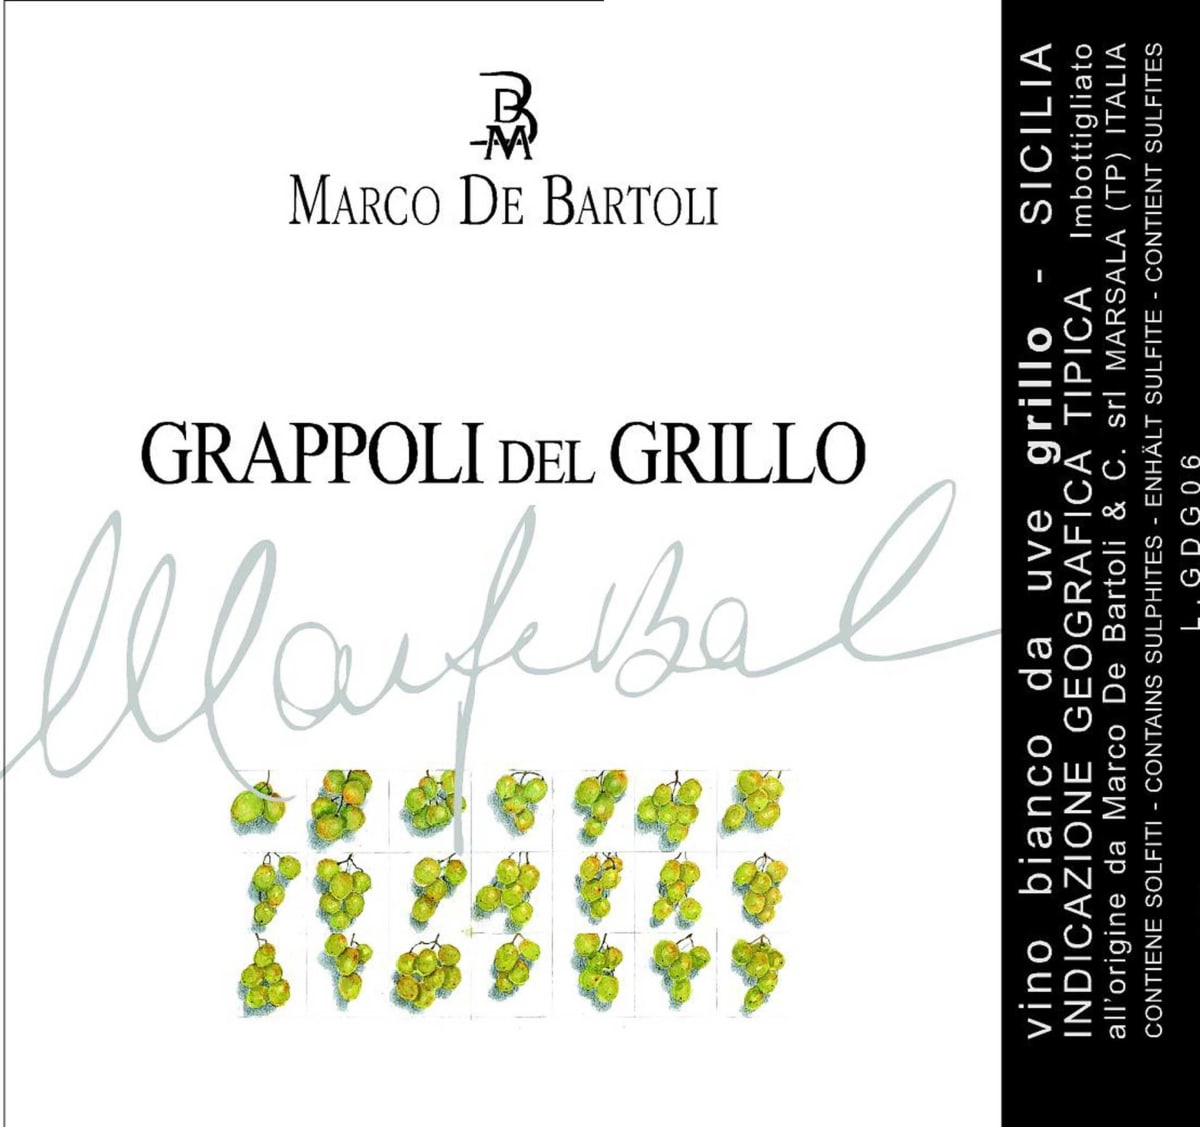 Marco De Bartoli Grappoli del Grillo 2008 Front Label